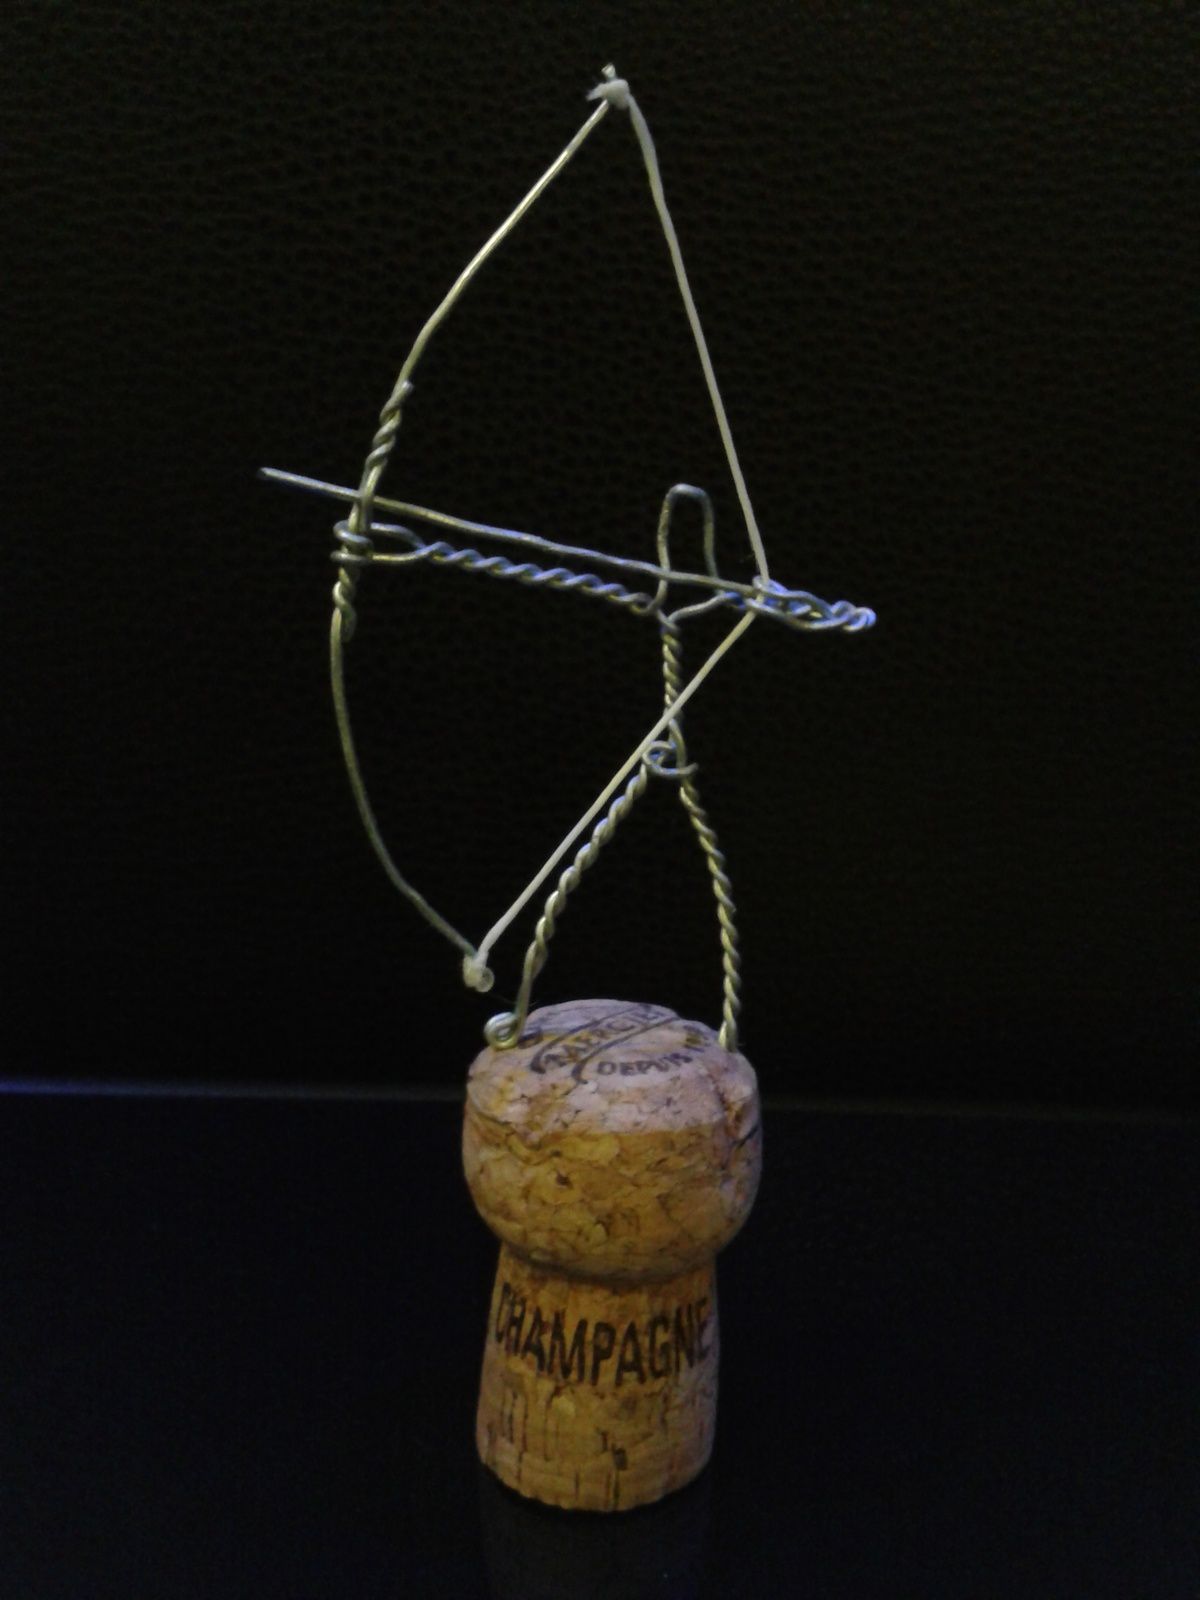 les muselets - sculptures sur fil de fer de champagne